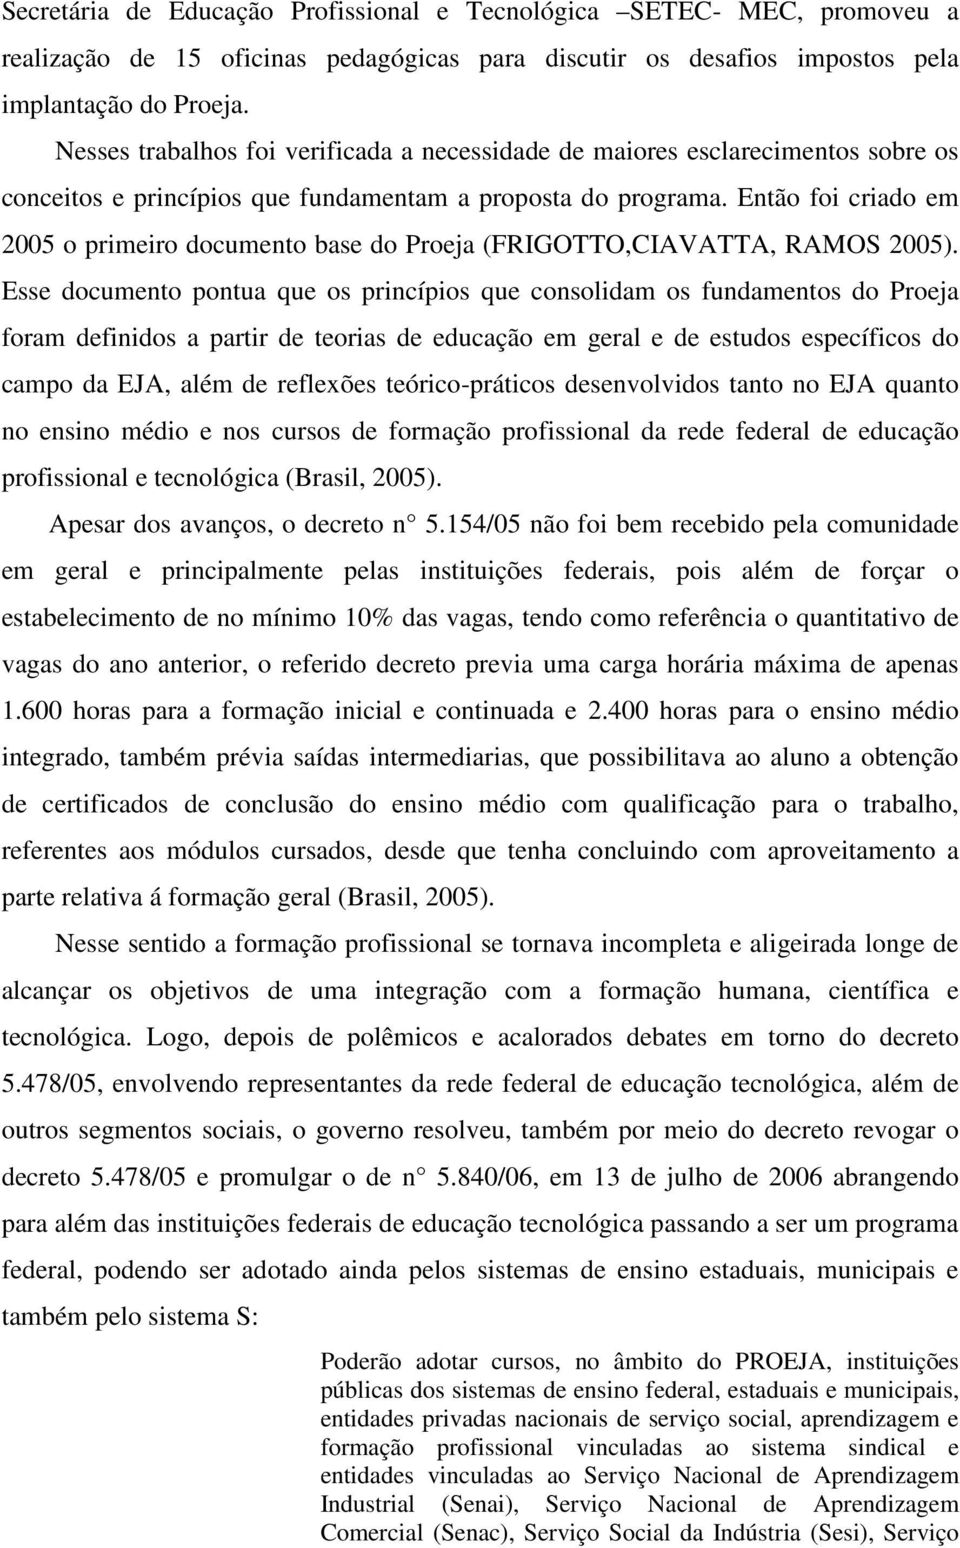 Então foi criado em 2005 o primeiro documento base do Proeja (FRIGOTTO,CIAVATTA, RAMOS 2005).